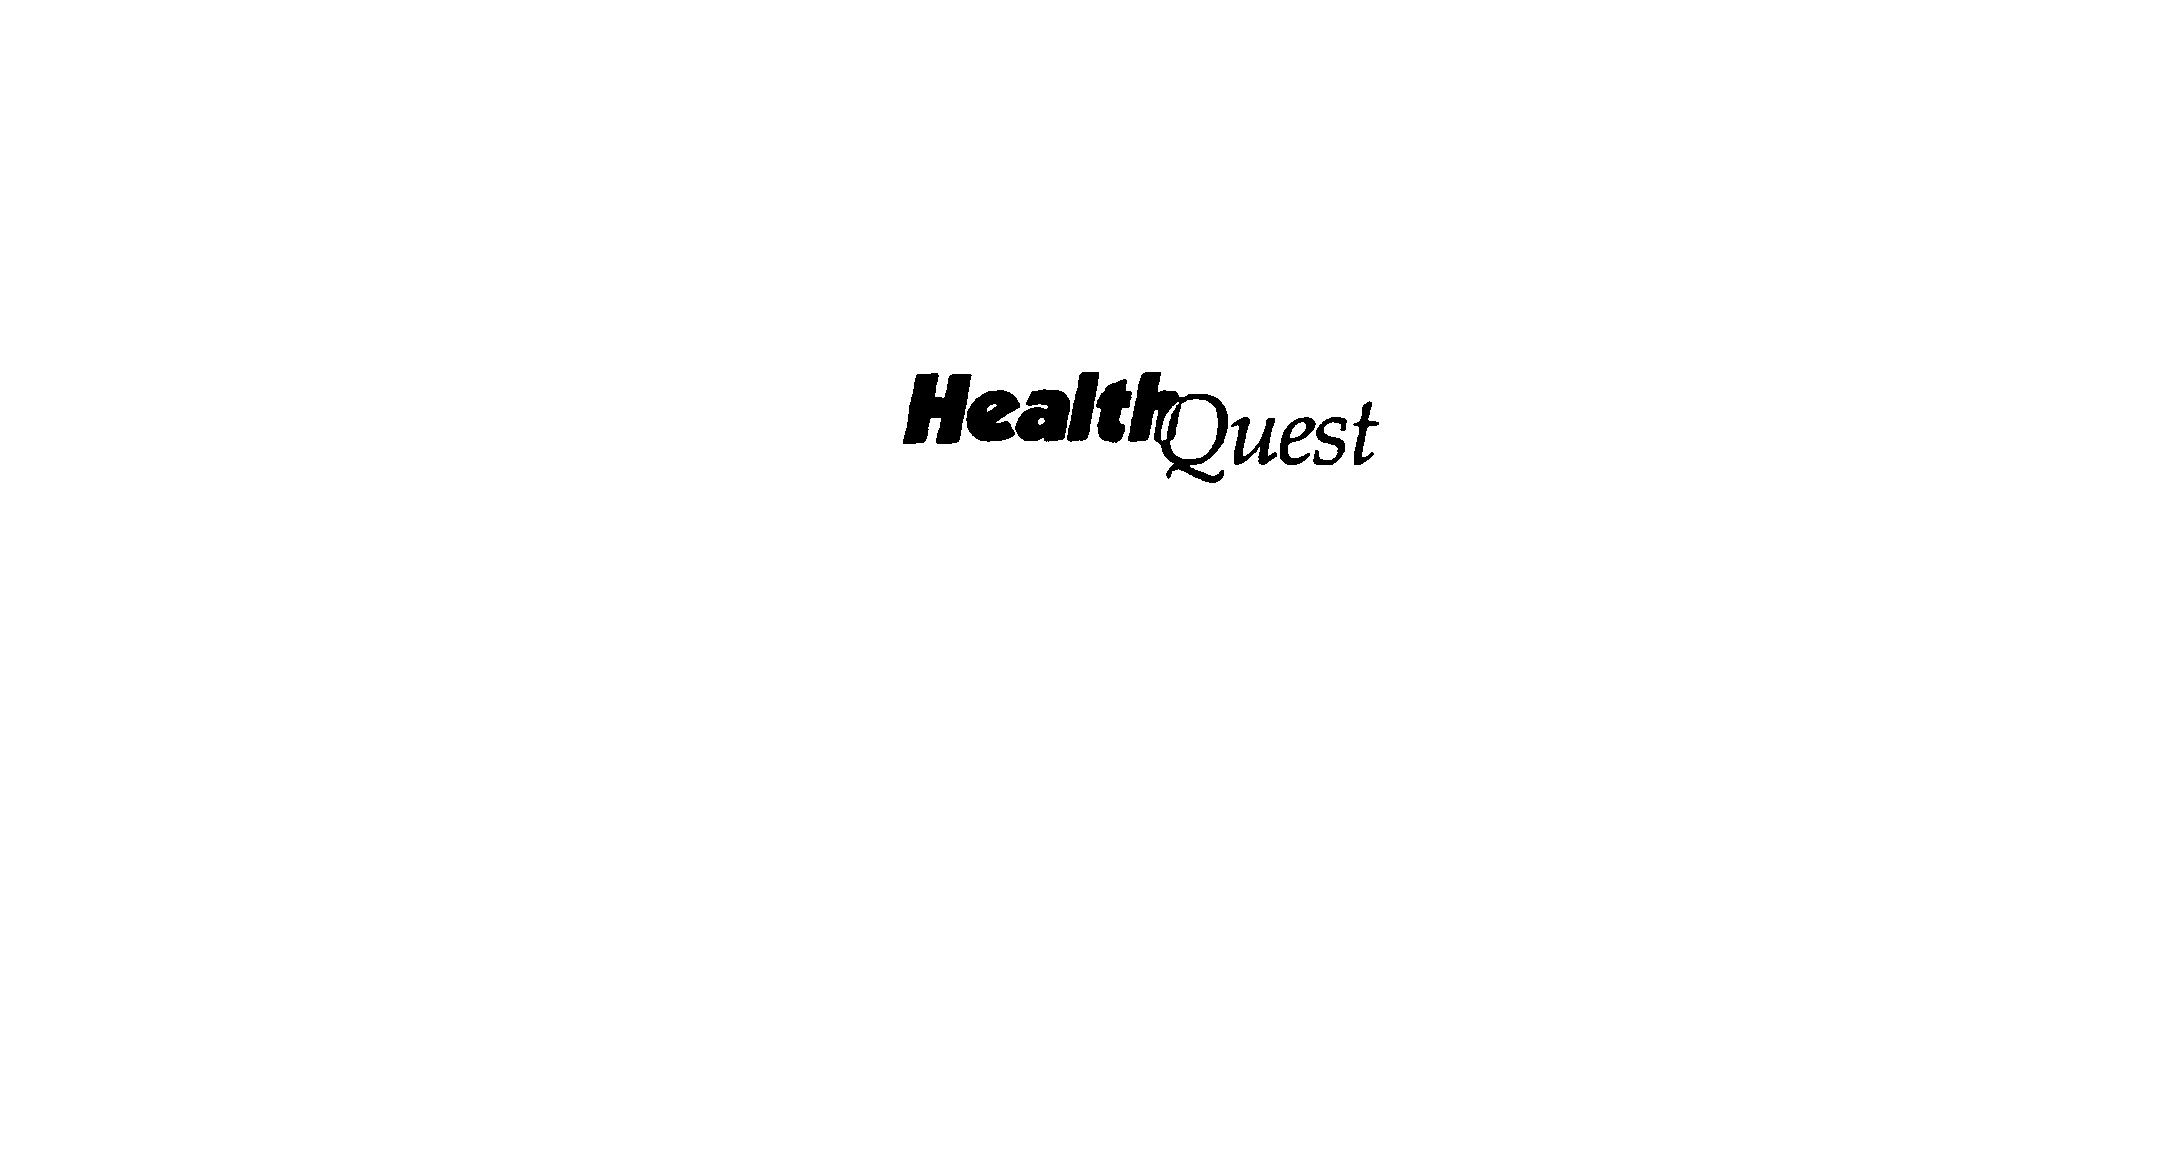 Trademark Logo HEALTHQUEST